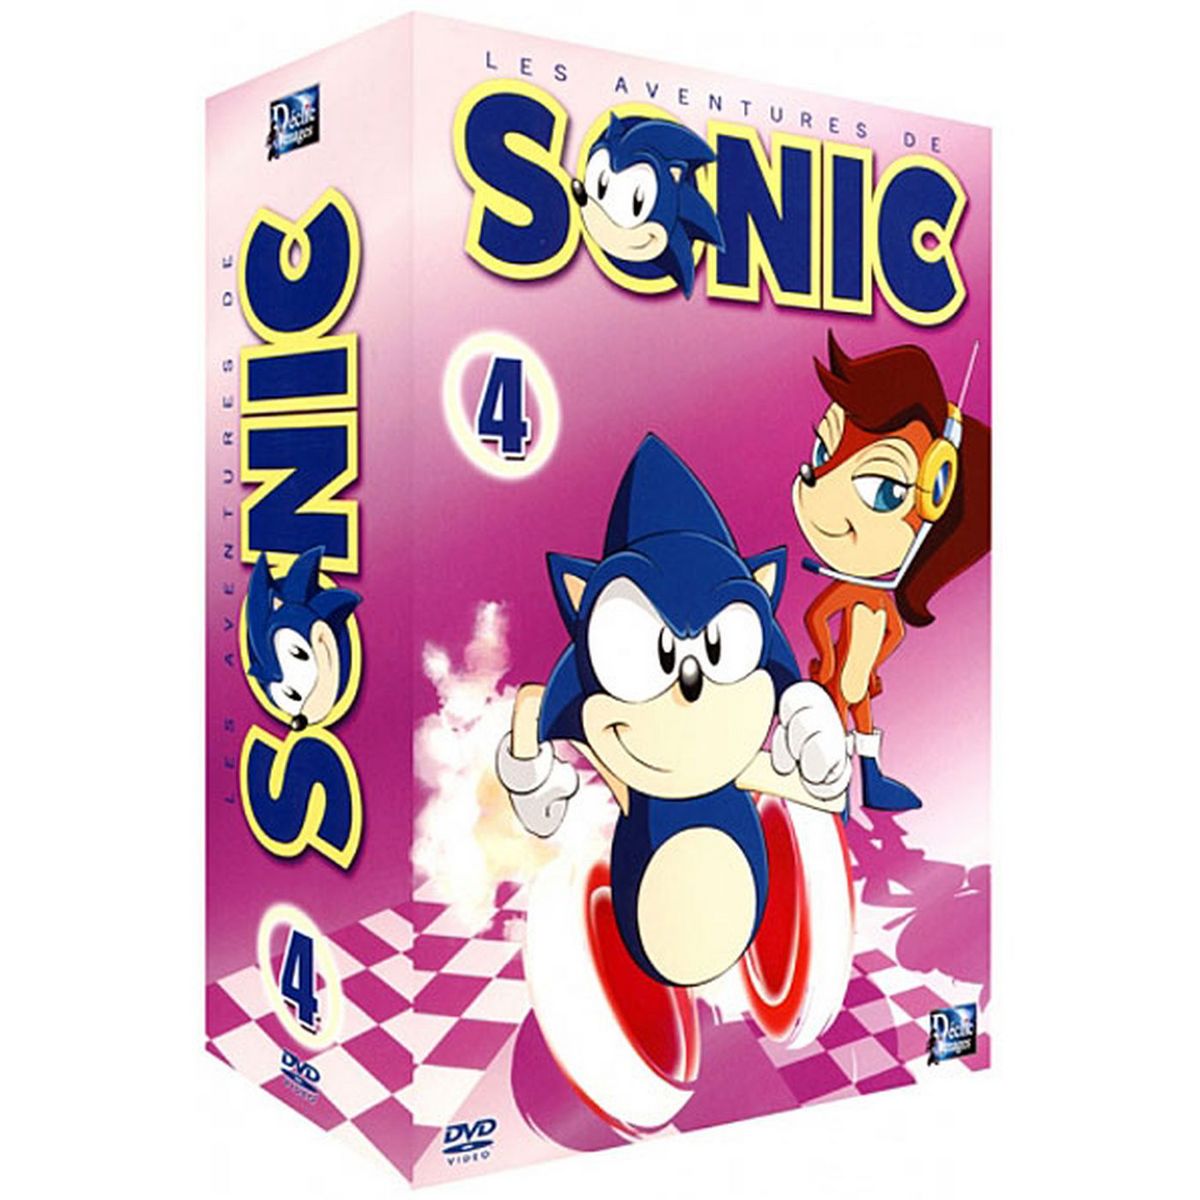 Les Aventures de Sonic Vol 4/4 DVD